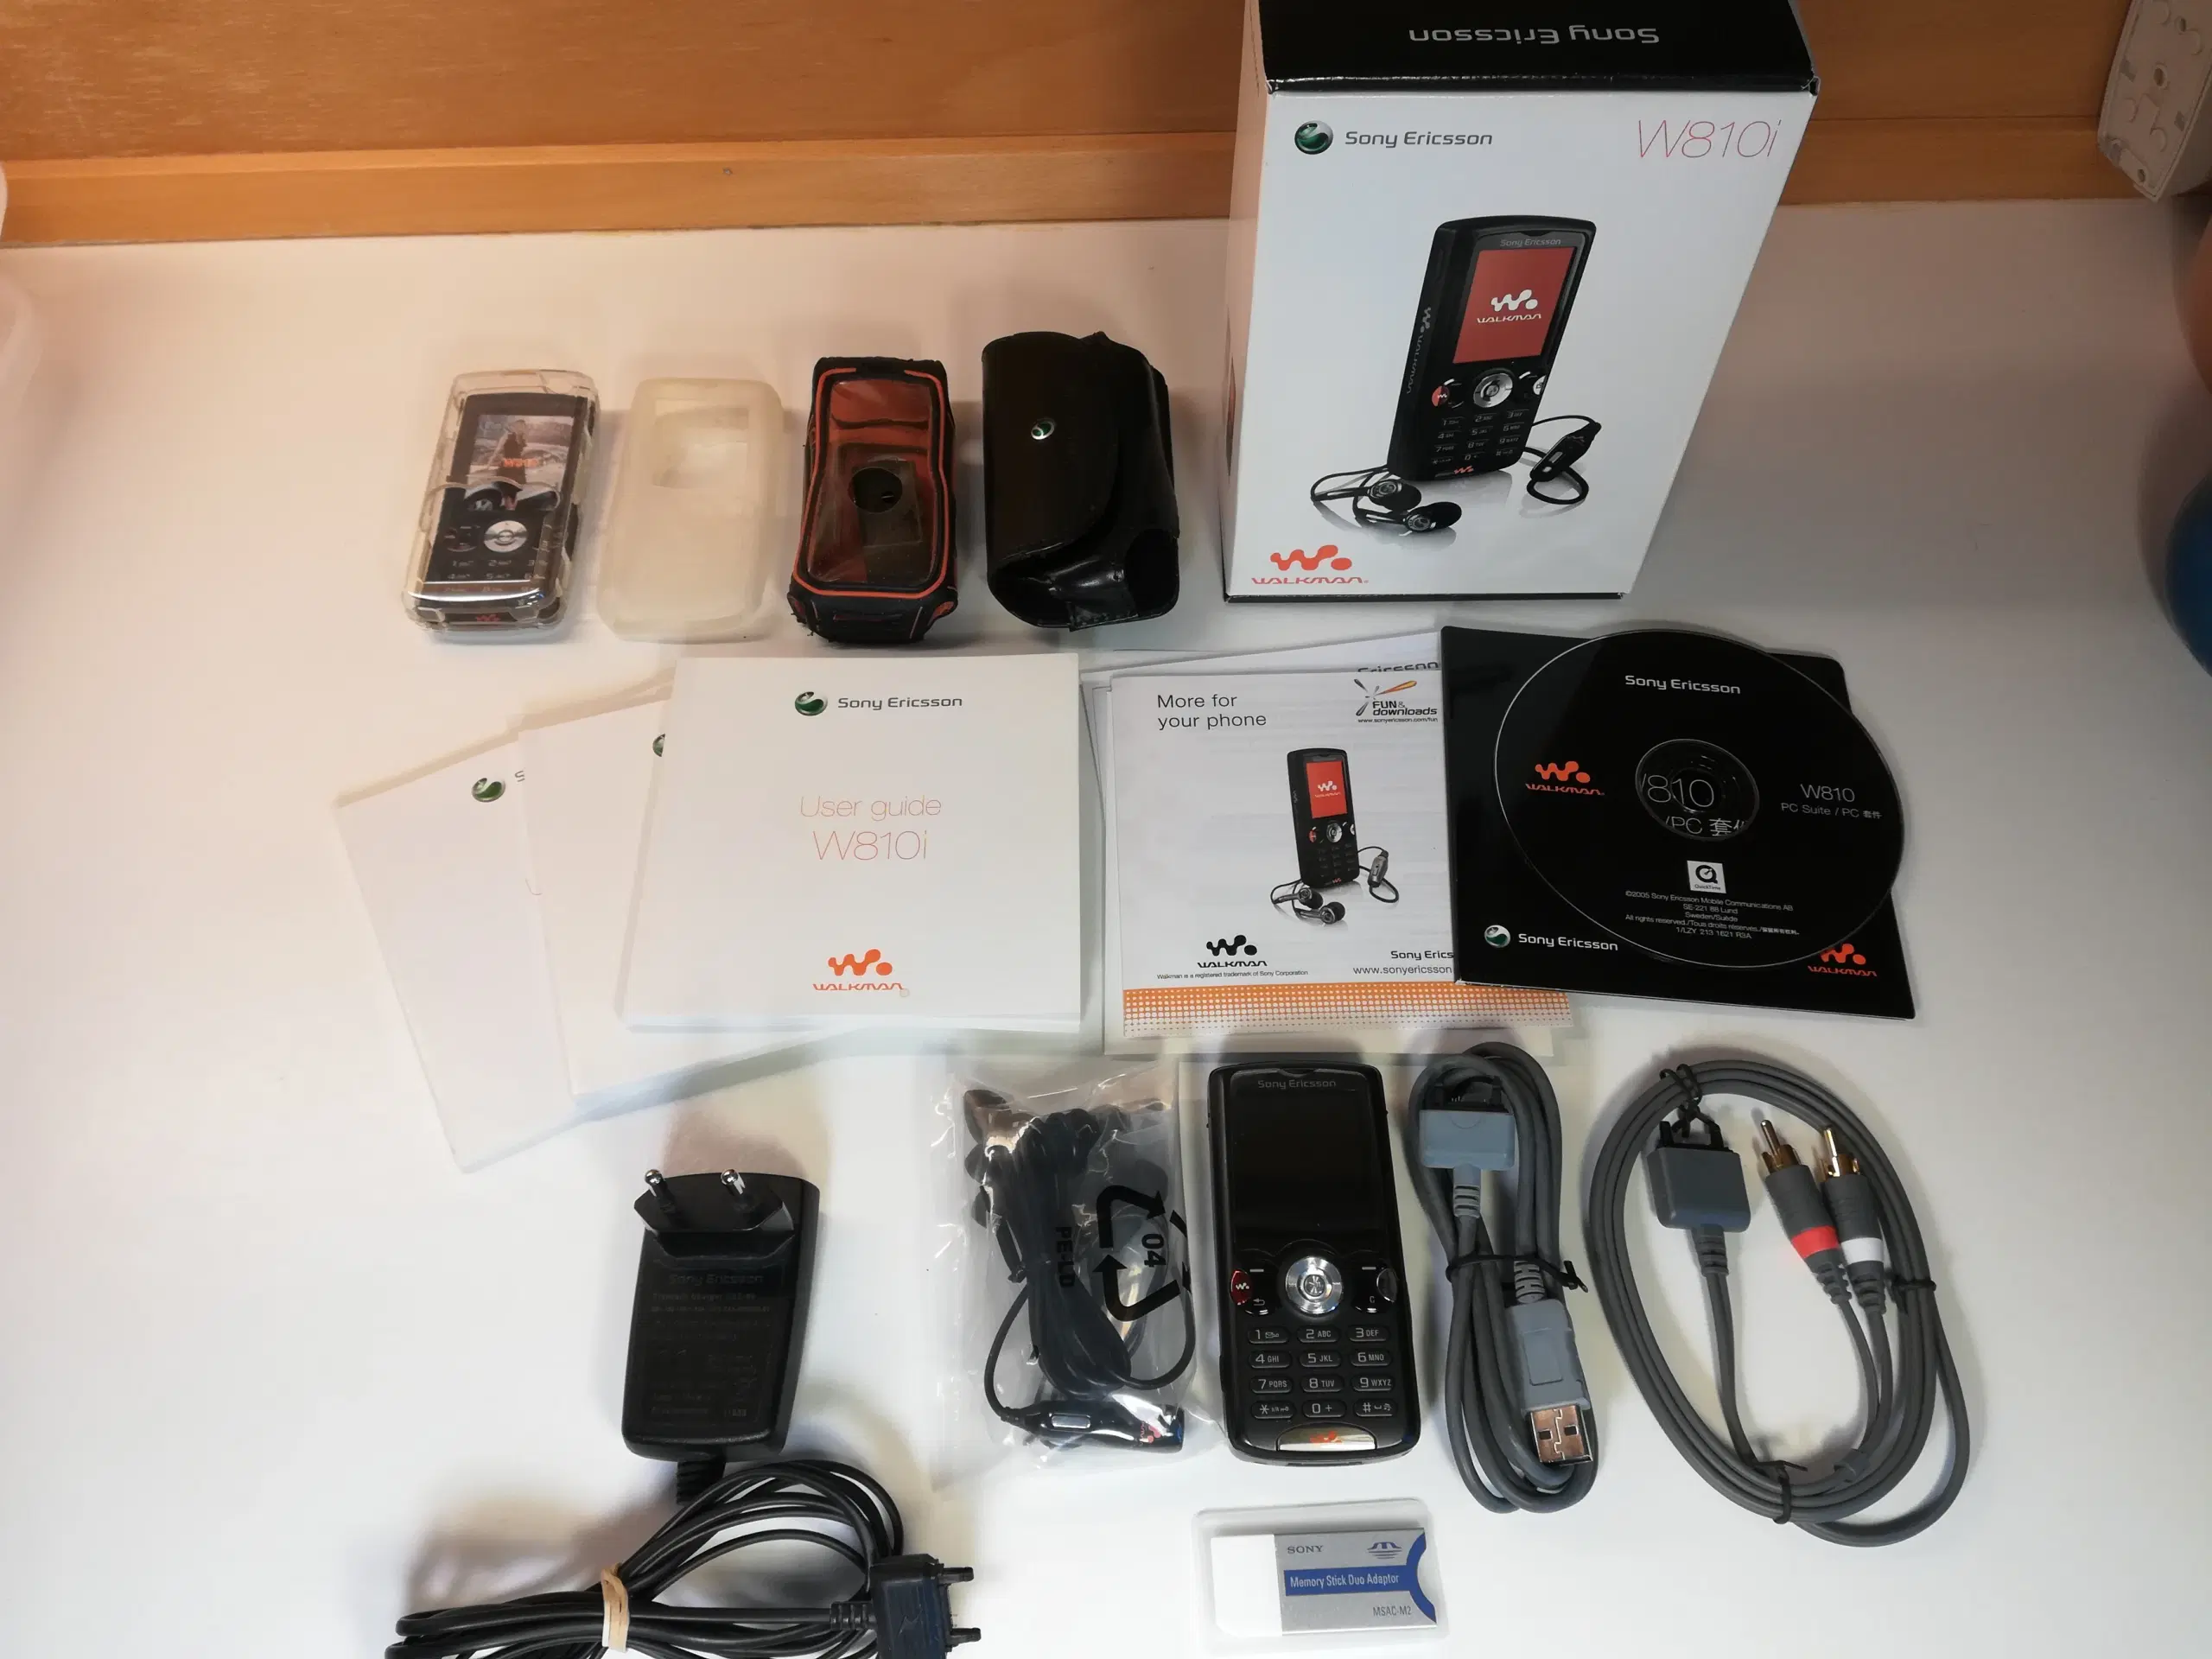 Sony Ericsson W810i walkman/mobiltelefon -velholdt